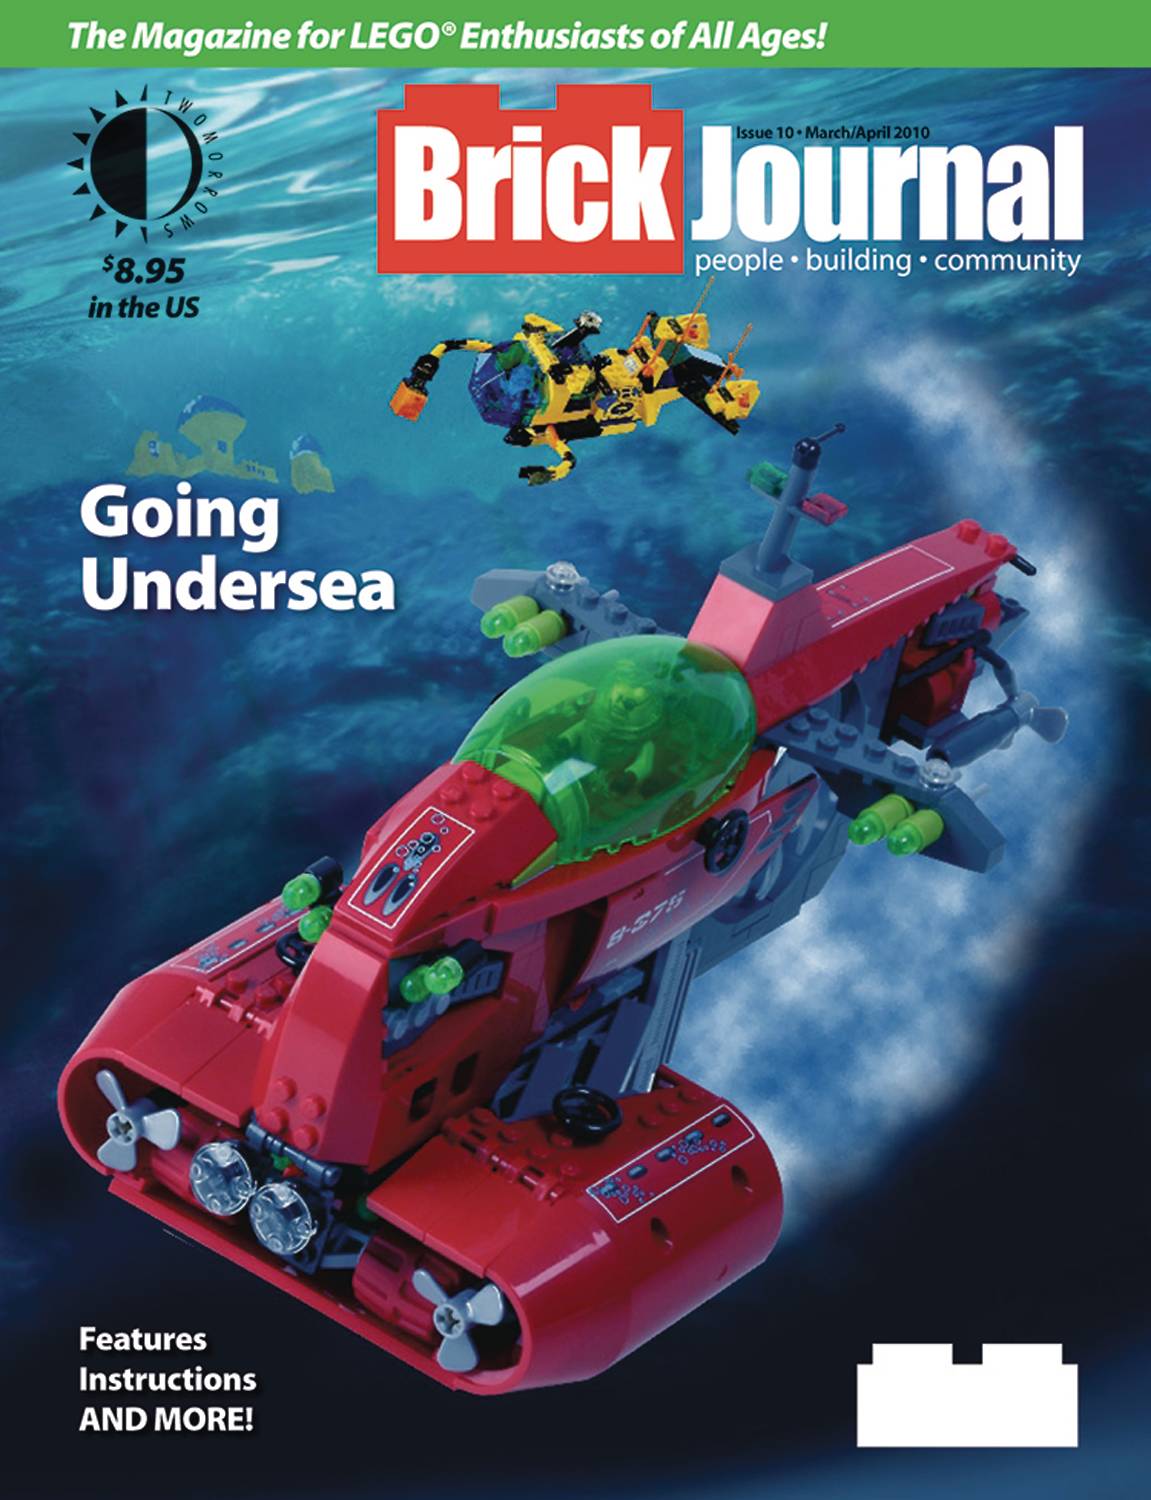 Brickjournal #10